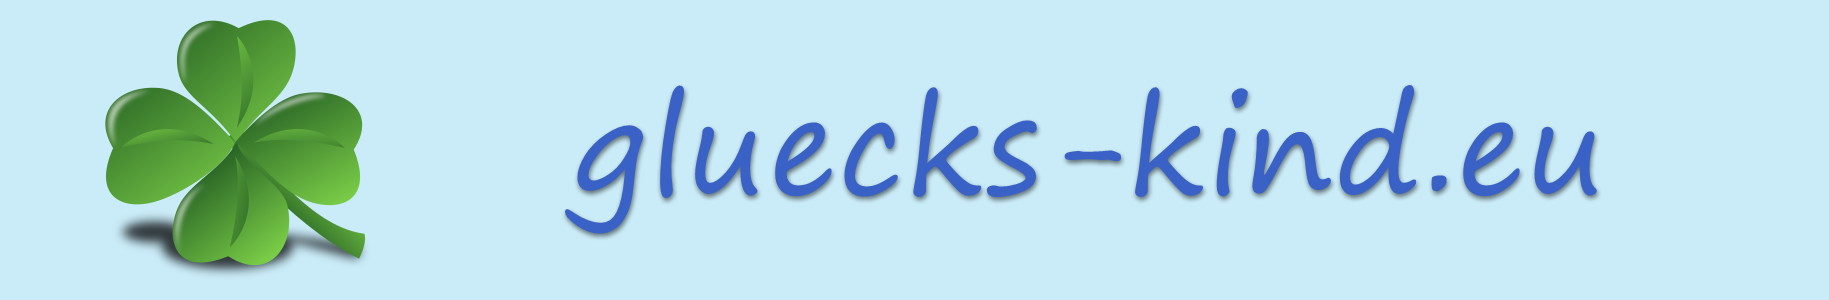 Gluecks-kind